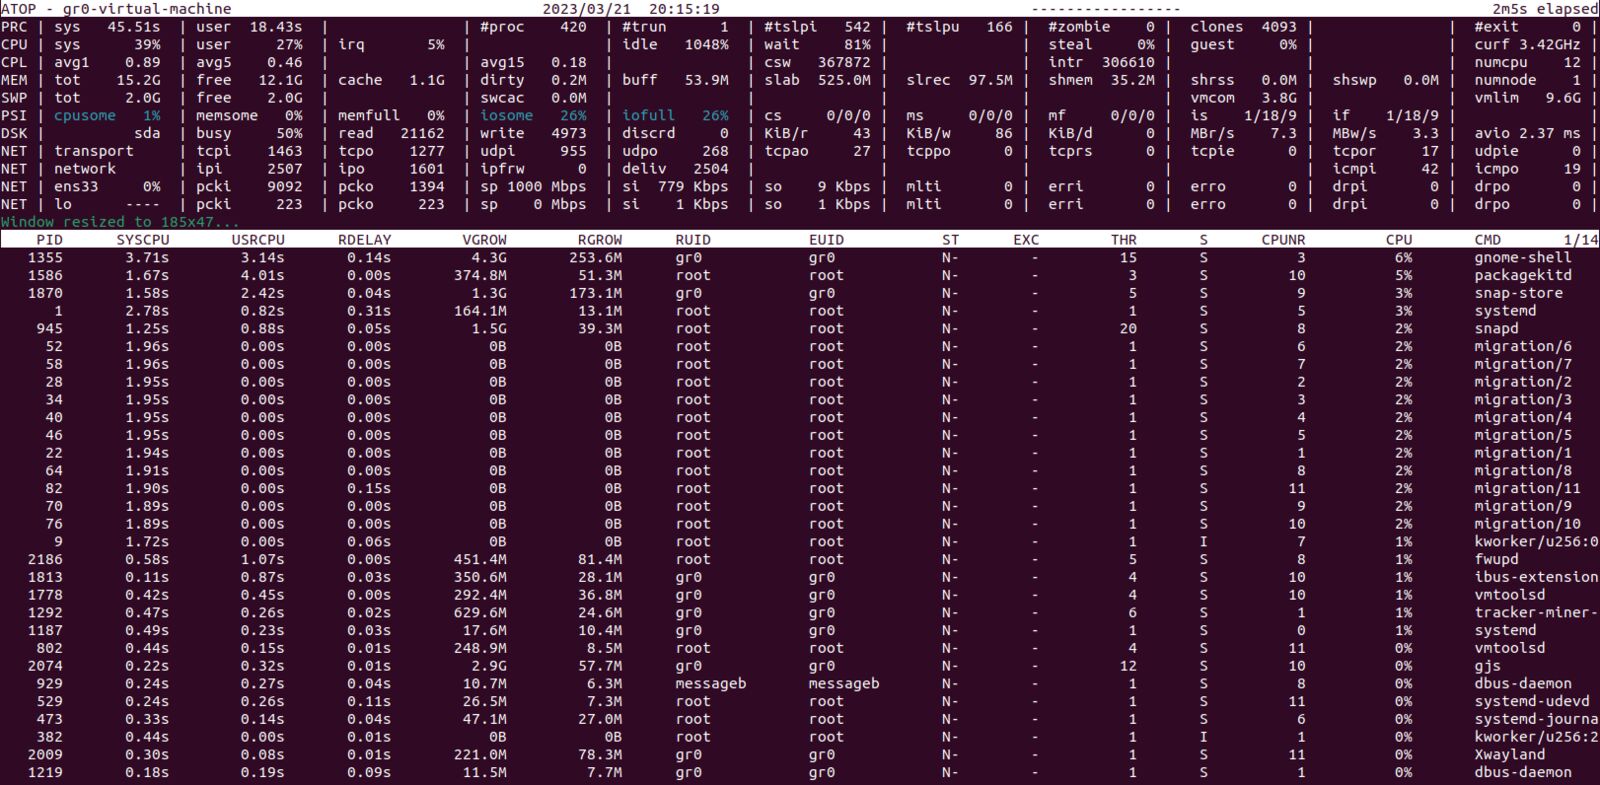 Atop Ubuntu server monitoring panel